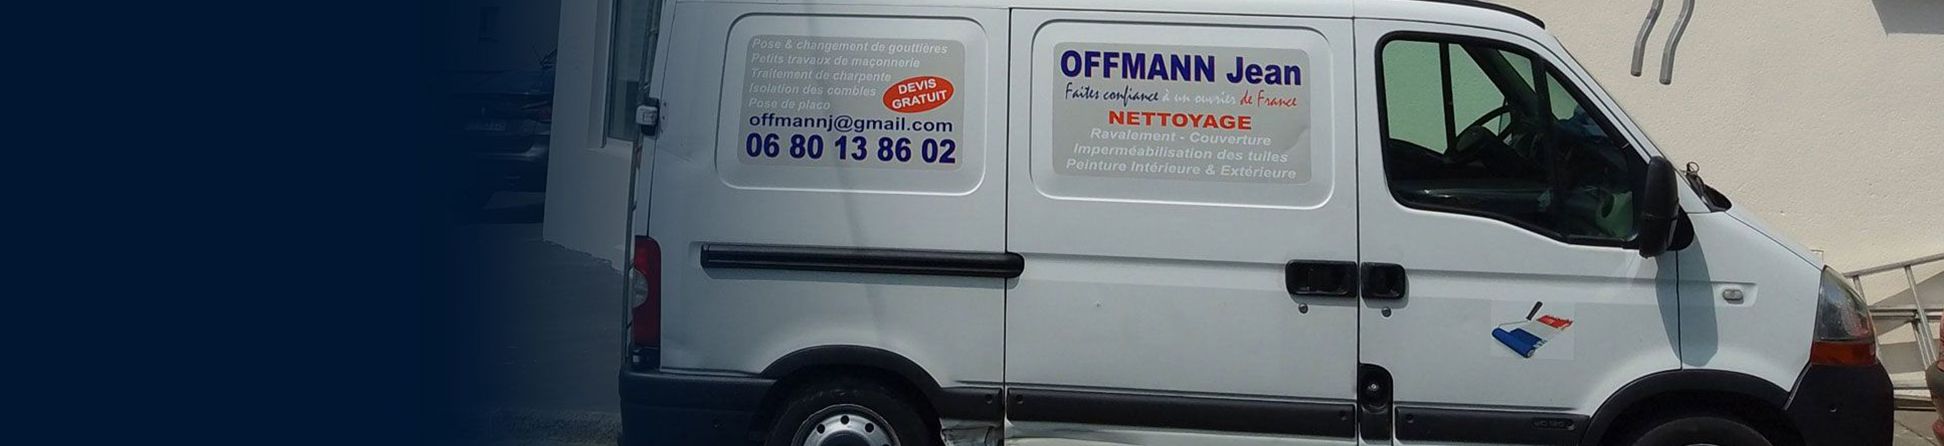 Offmann Jean